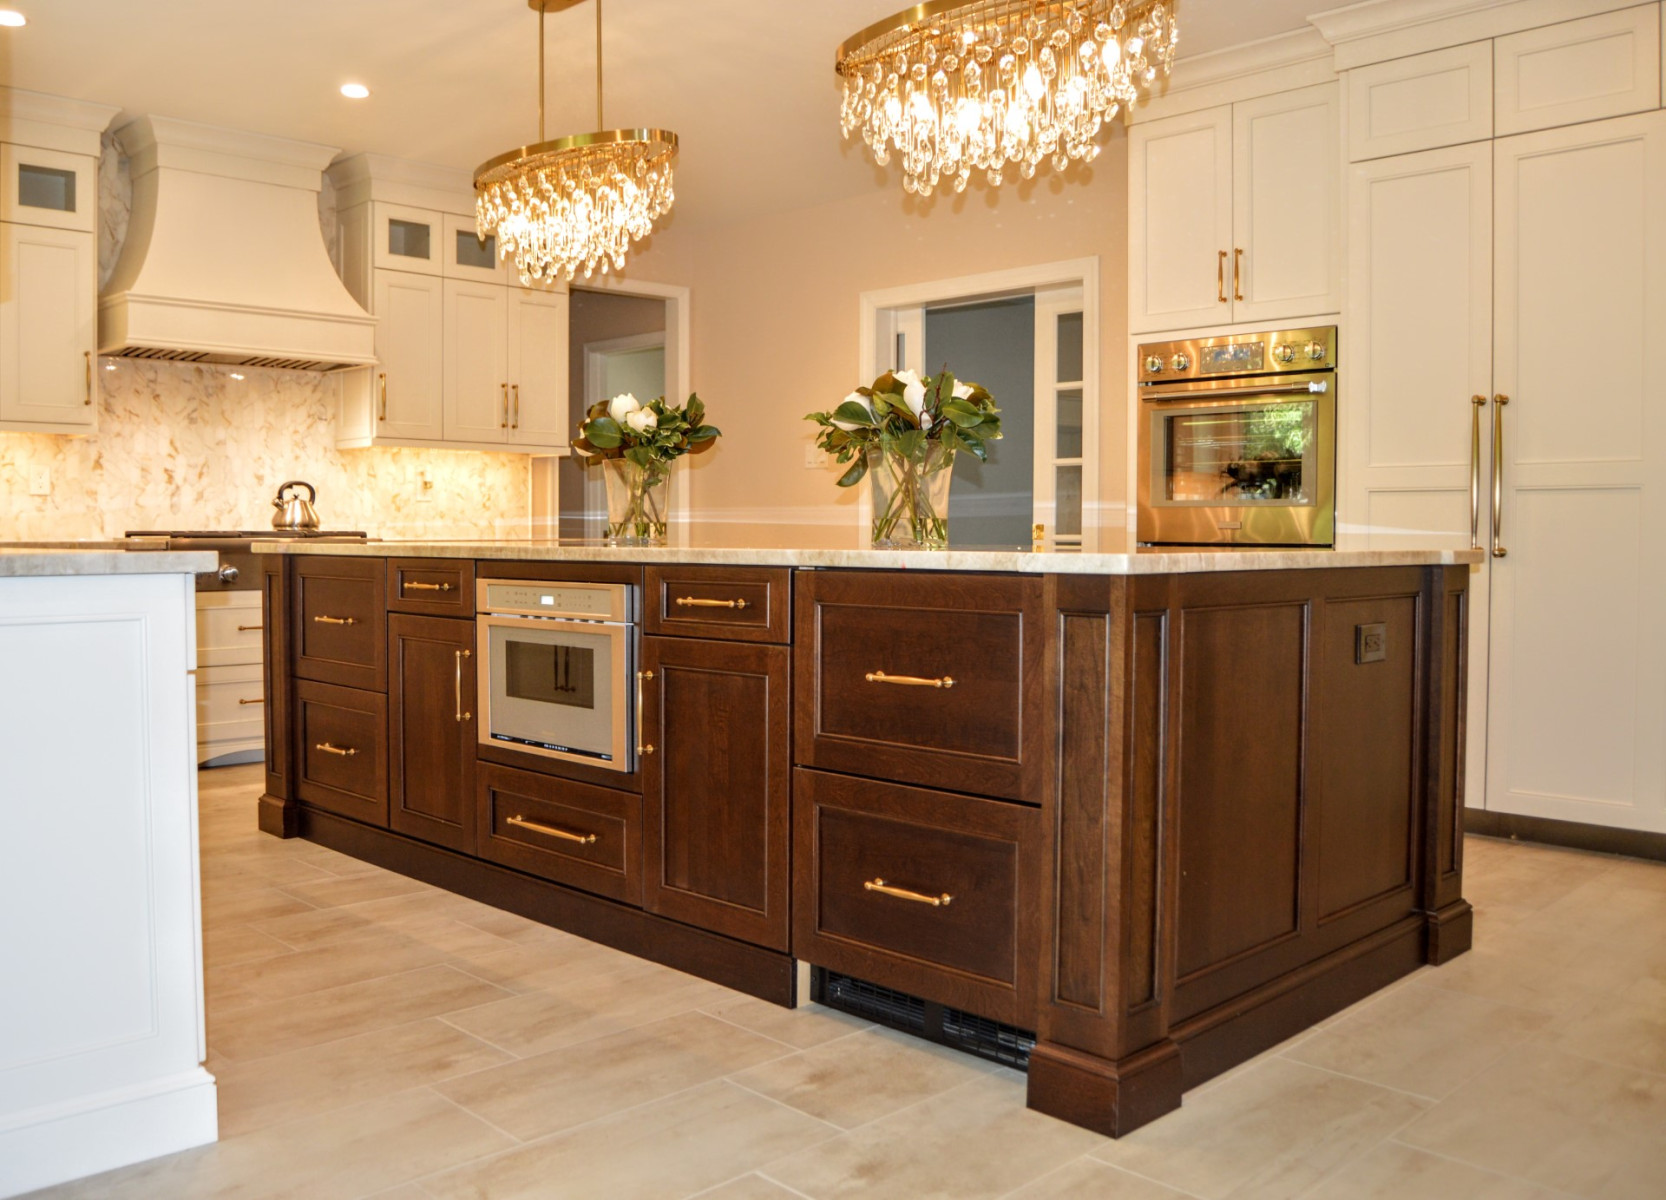 Kitchen Remodel In Marlton, NJ - Cabinet Tree Design Studios